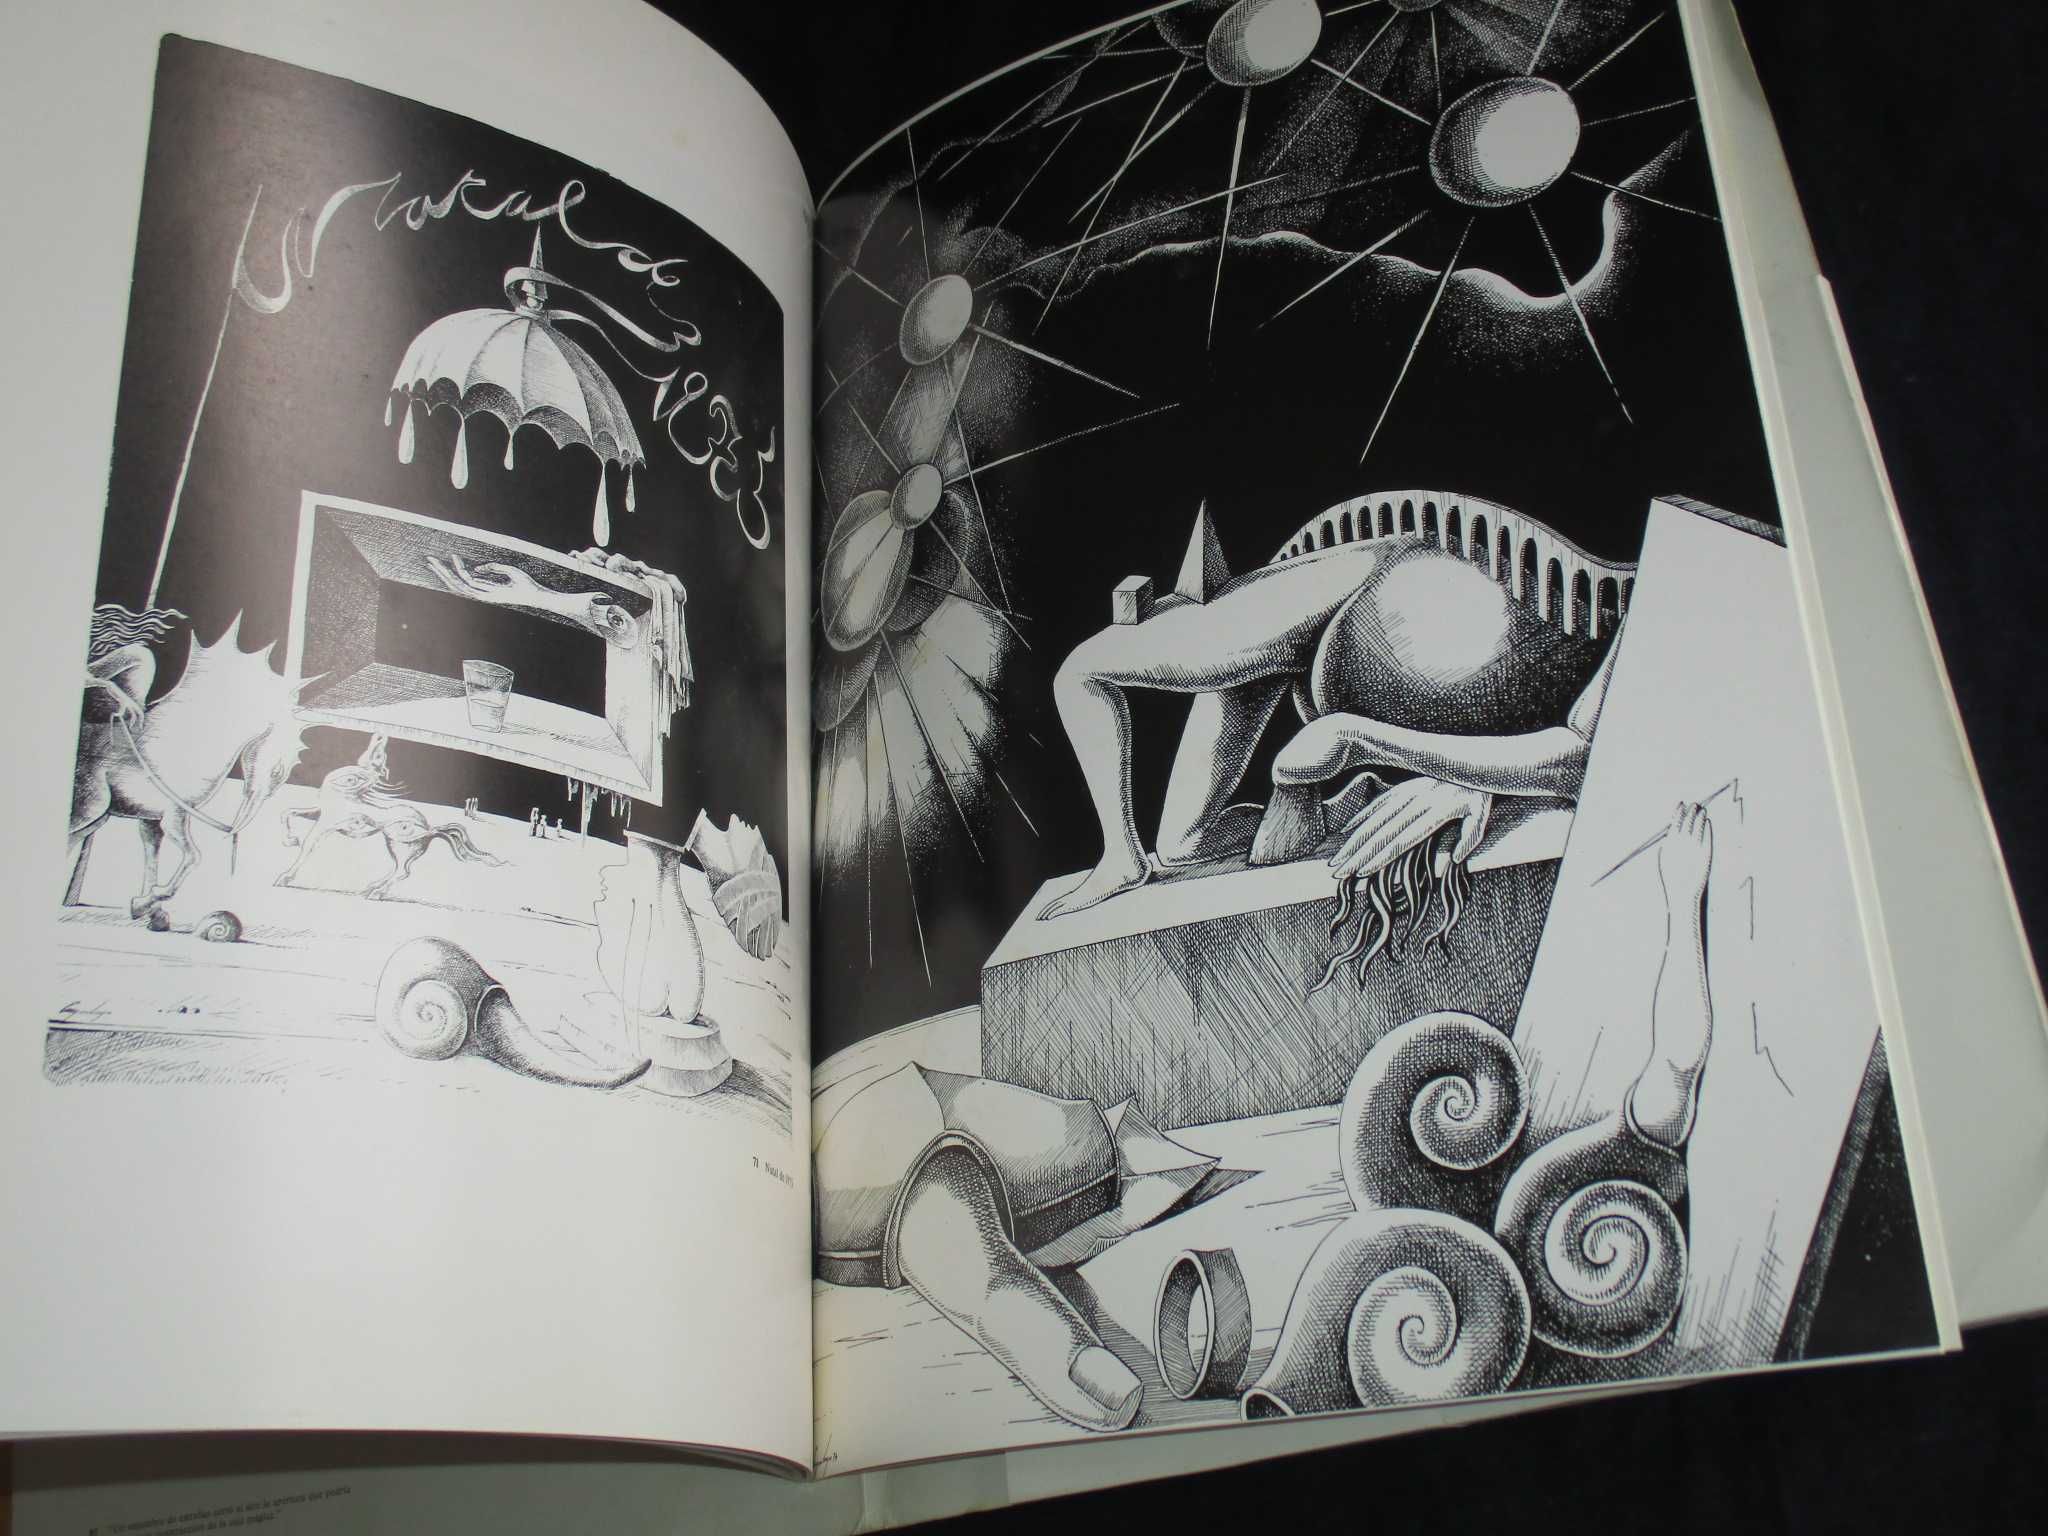 Livro O Atelier de Cruzeiro Seixas Galeria S. Mamede 1980